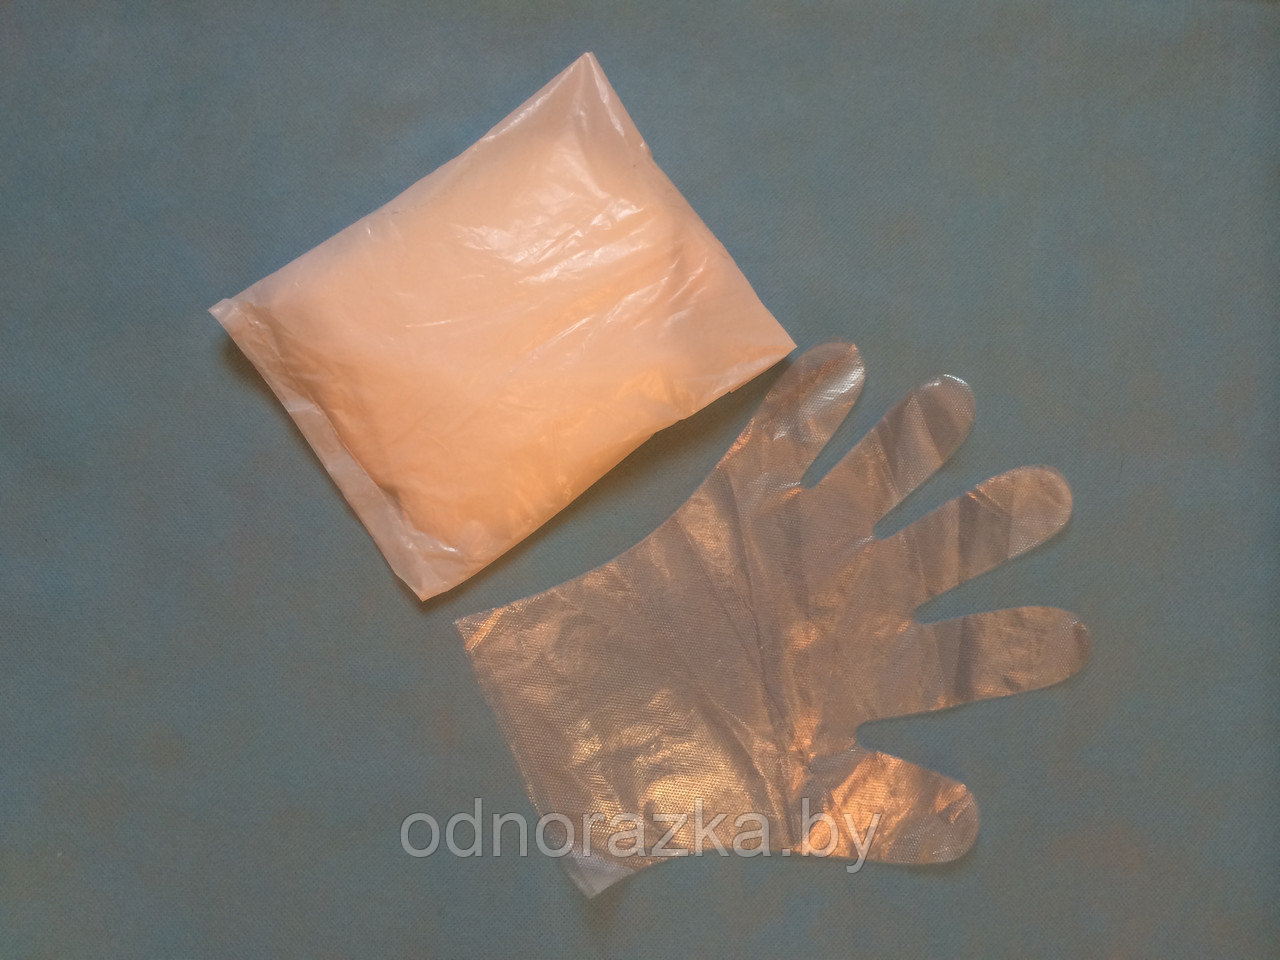 Перчатки одноразовые полиэтиленовые (100 шт)